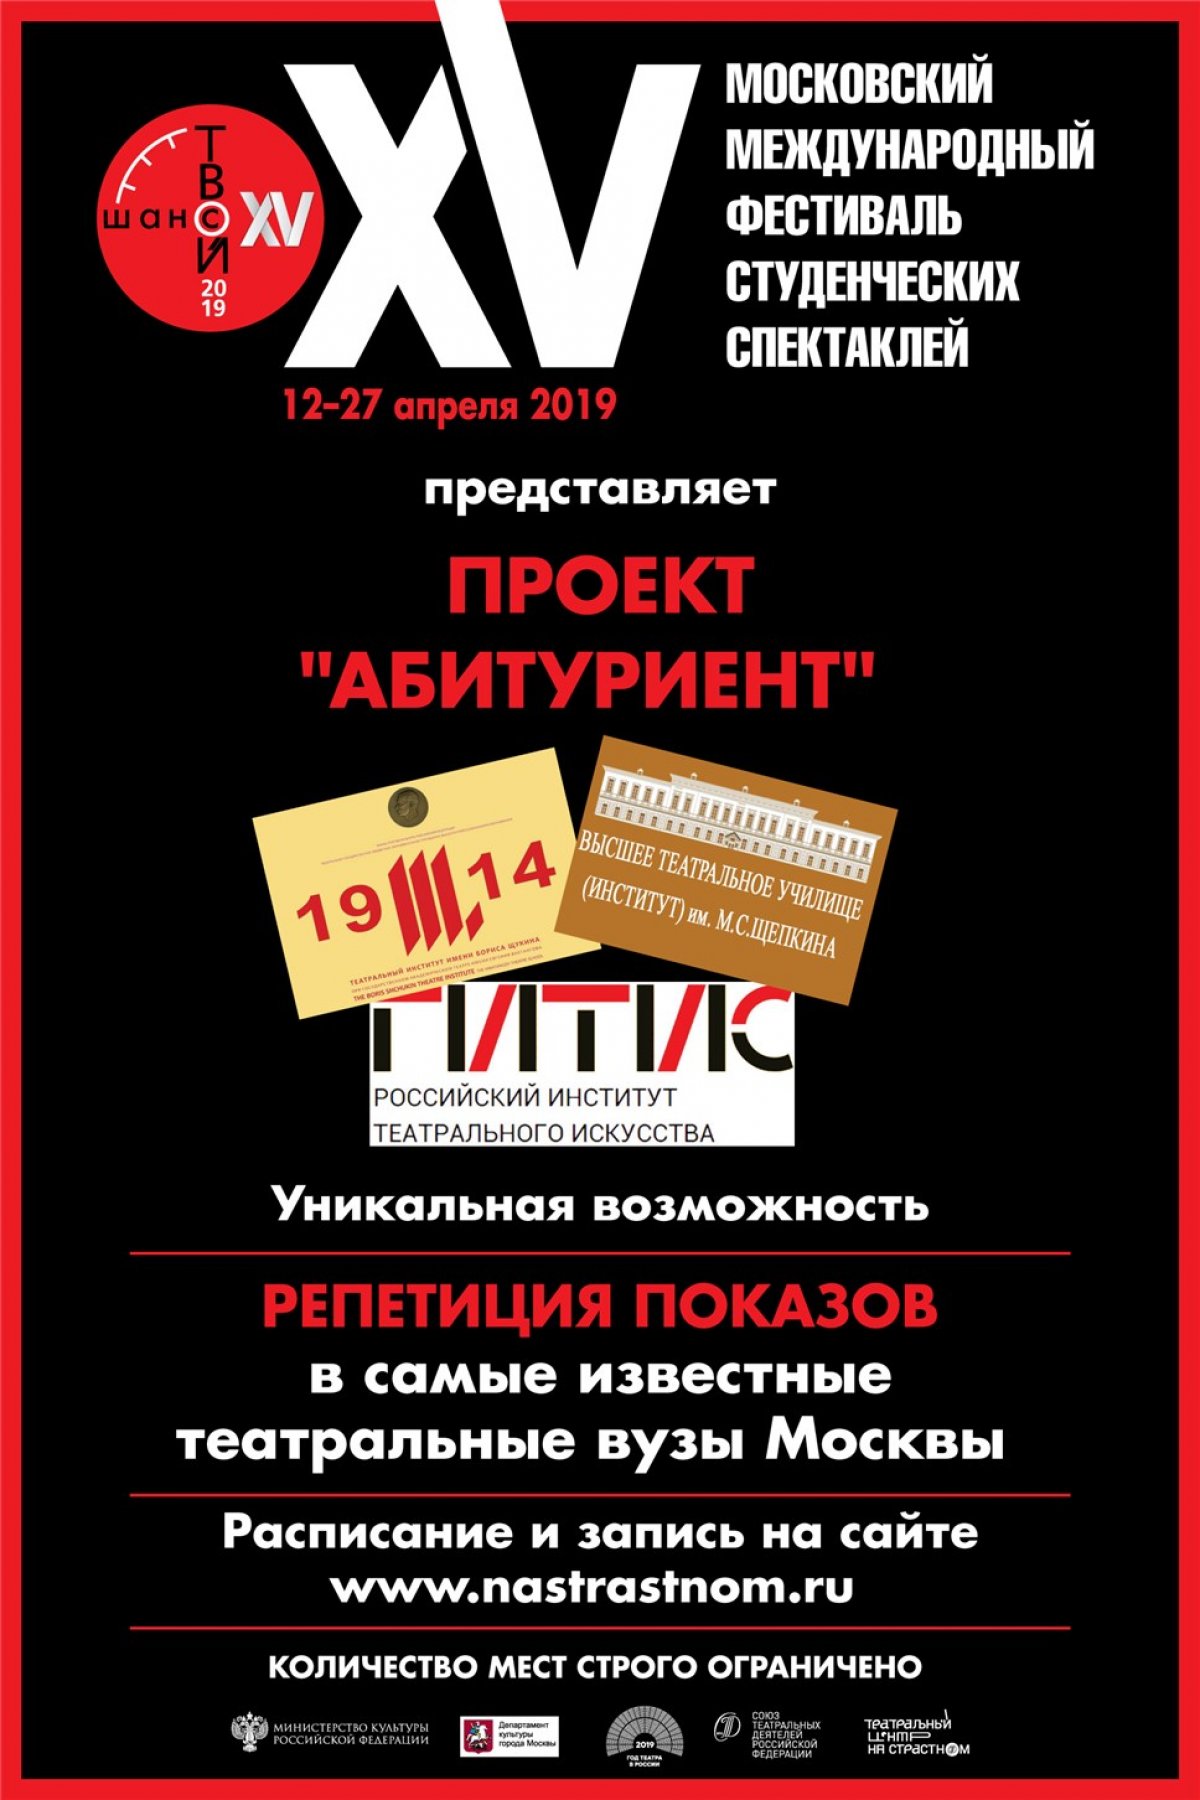 Фестиваль "Твой шанс" предлагает уникальную возможность всем желающим абитуриентам пройти репетицию показа в самые знаменитые театральные вузы Москвы